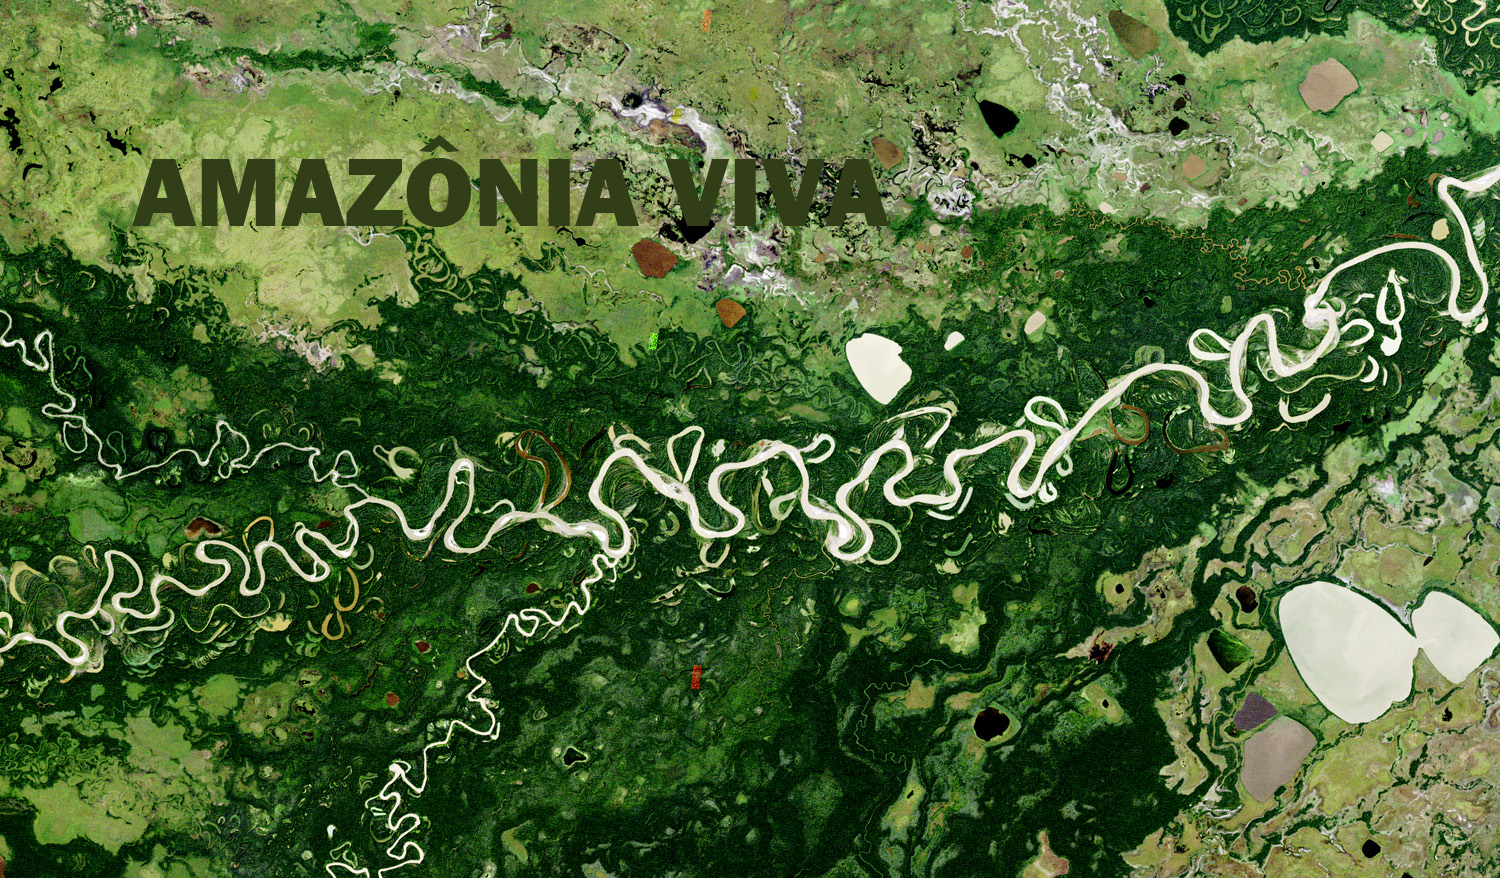 Pesquisa sobre conservação na Amazônia 6: pesquisa na justificativa de proteção